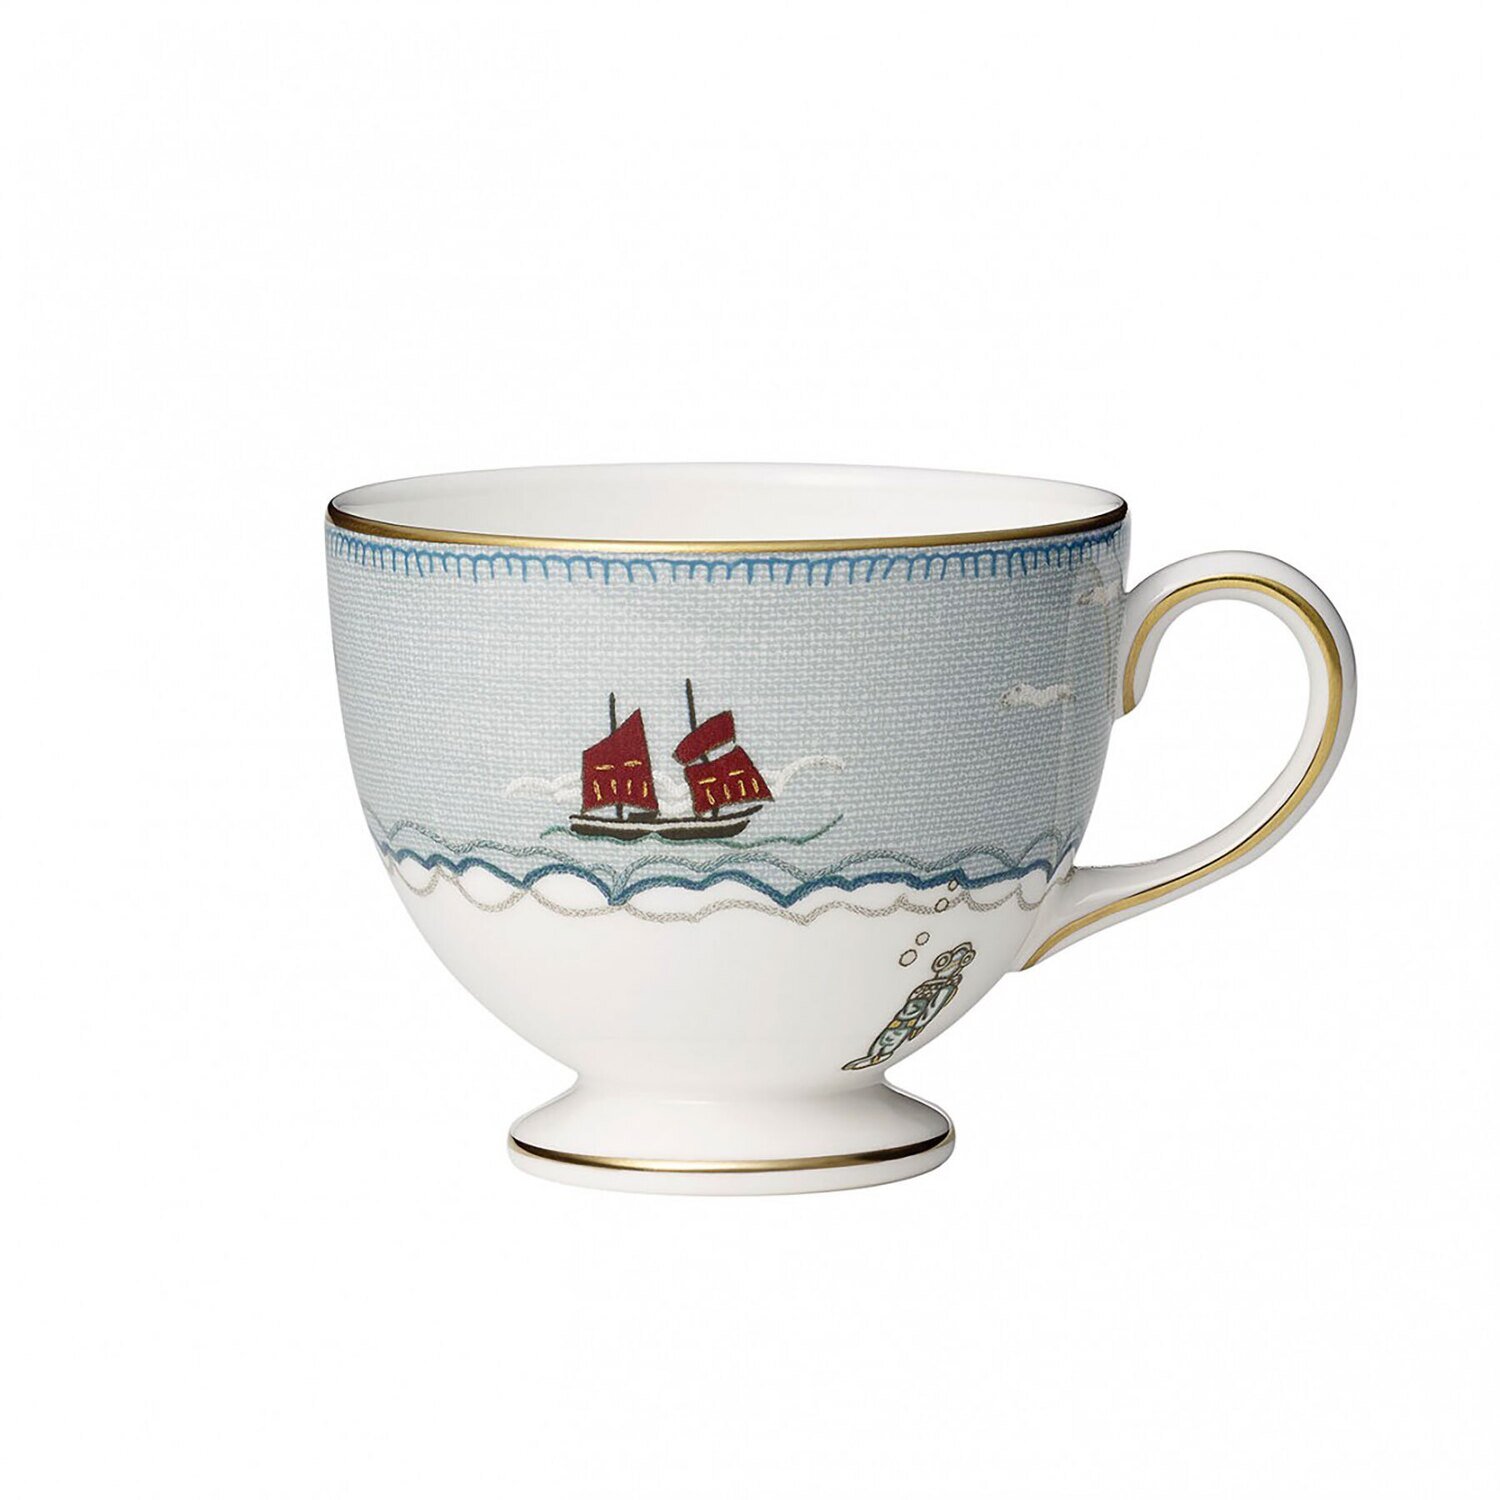 Wedgwood Sailors Farewell Teacup & Saucer Set 1050199